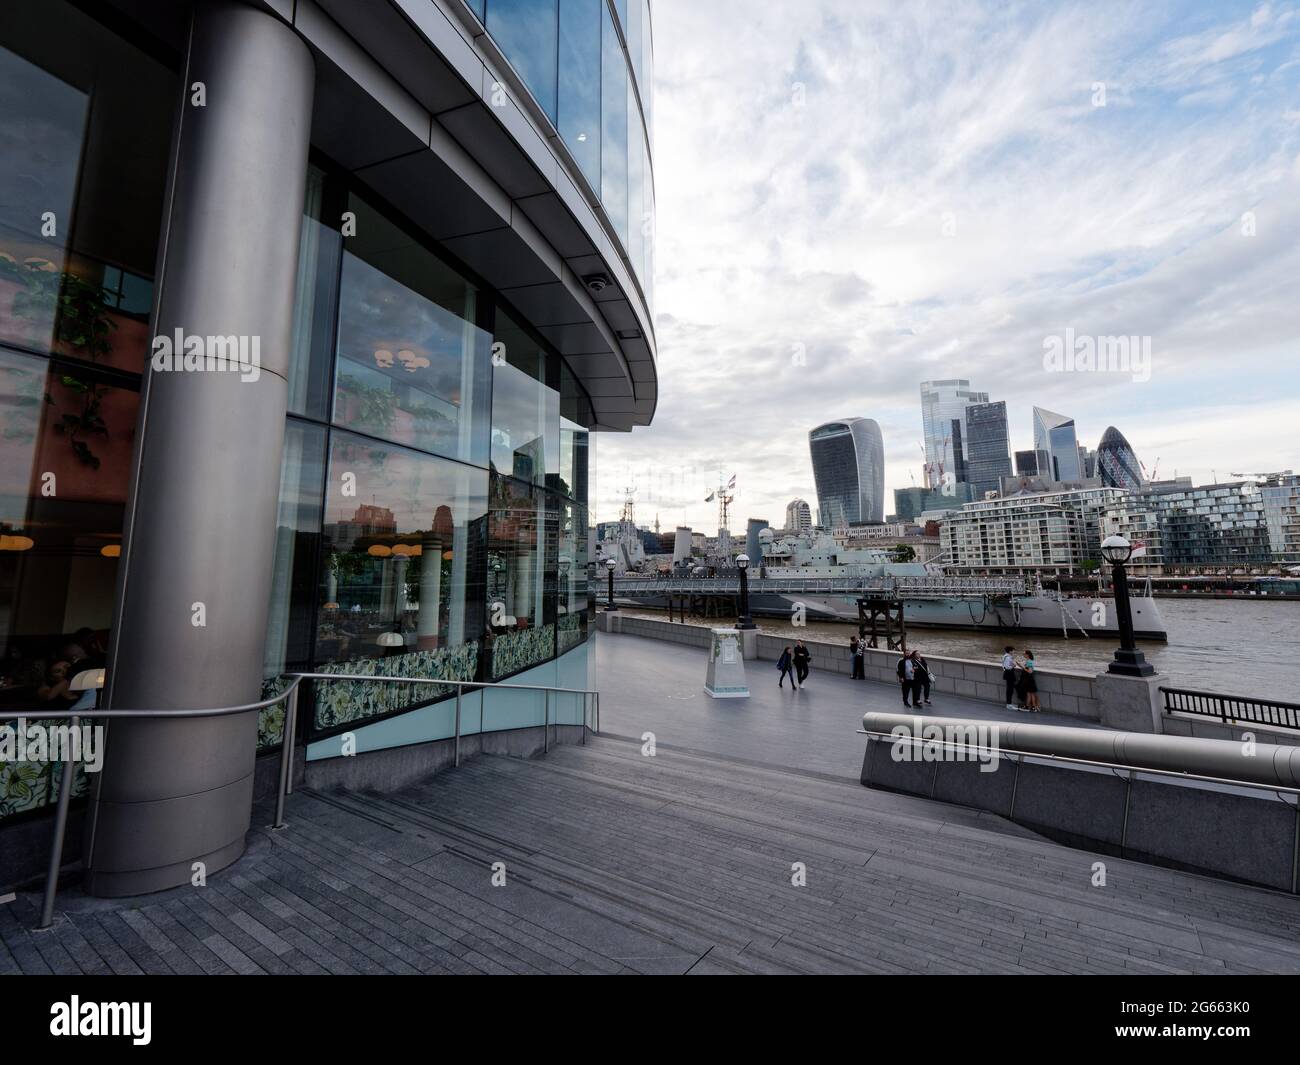 London, Greater London, England - Juni 26 2021: Architektur in More London Rverside mit Blick über die Themse zu Wolkenkratzern. Stockfoto